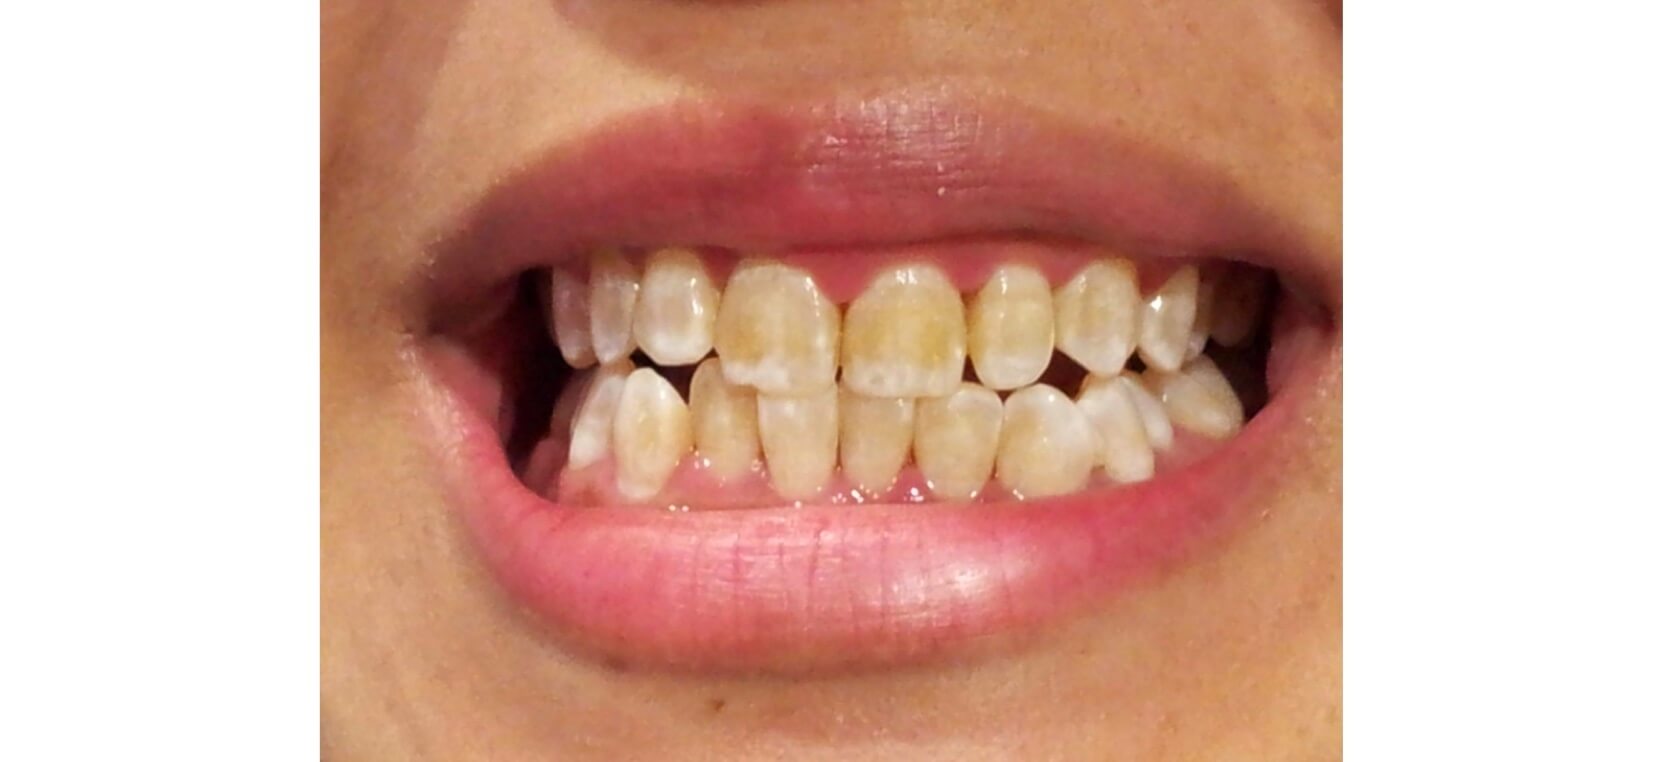 гипоплазия зубов фото